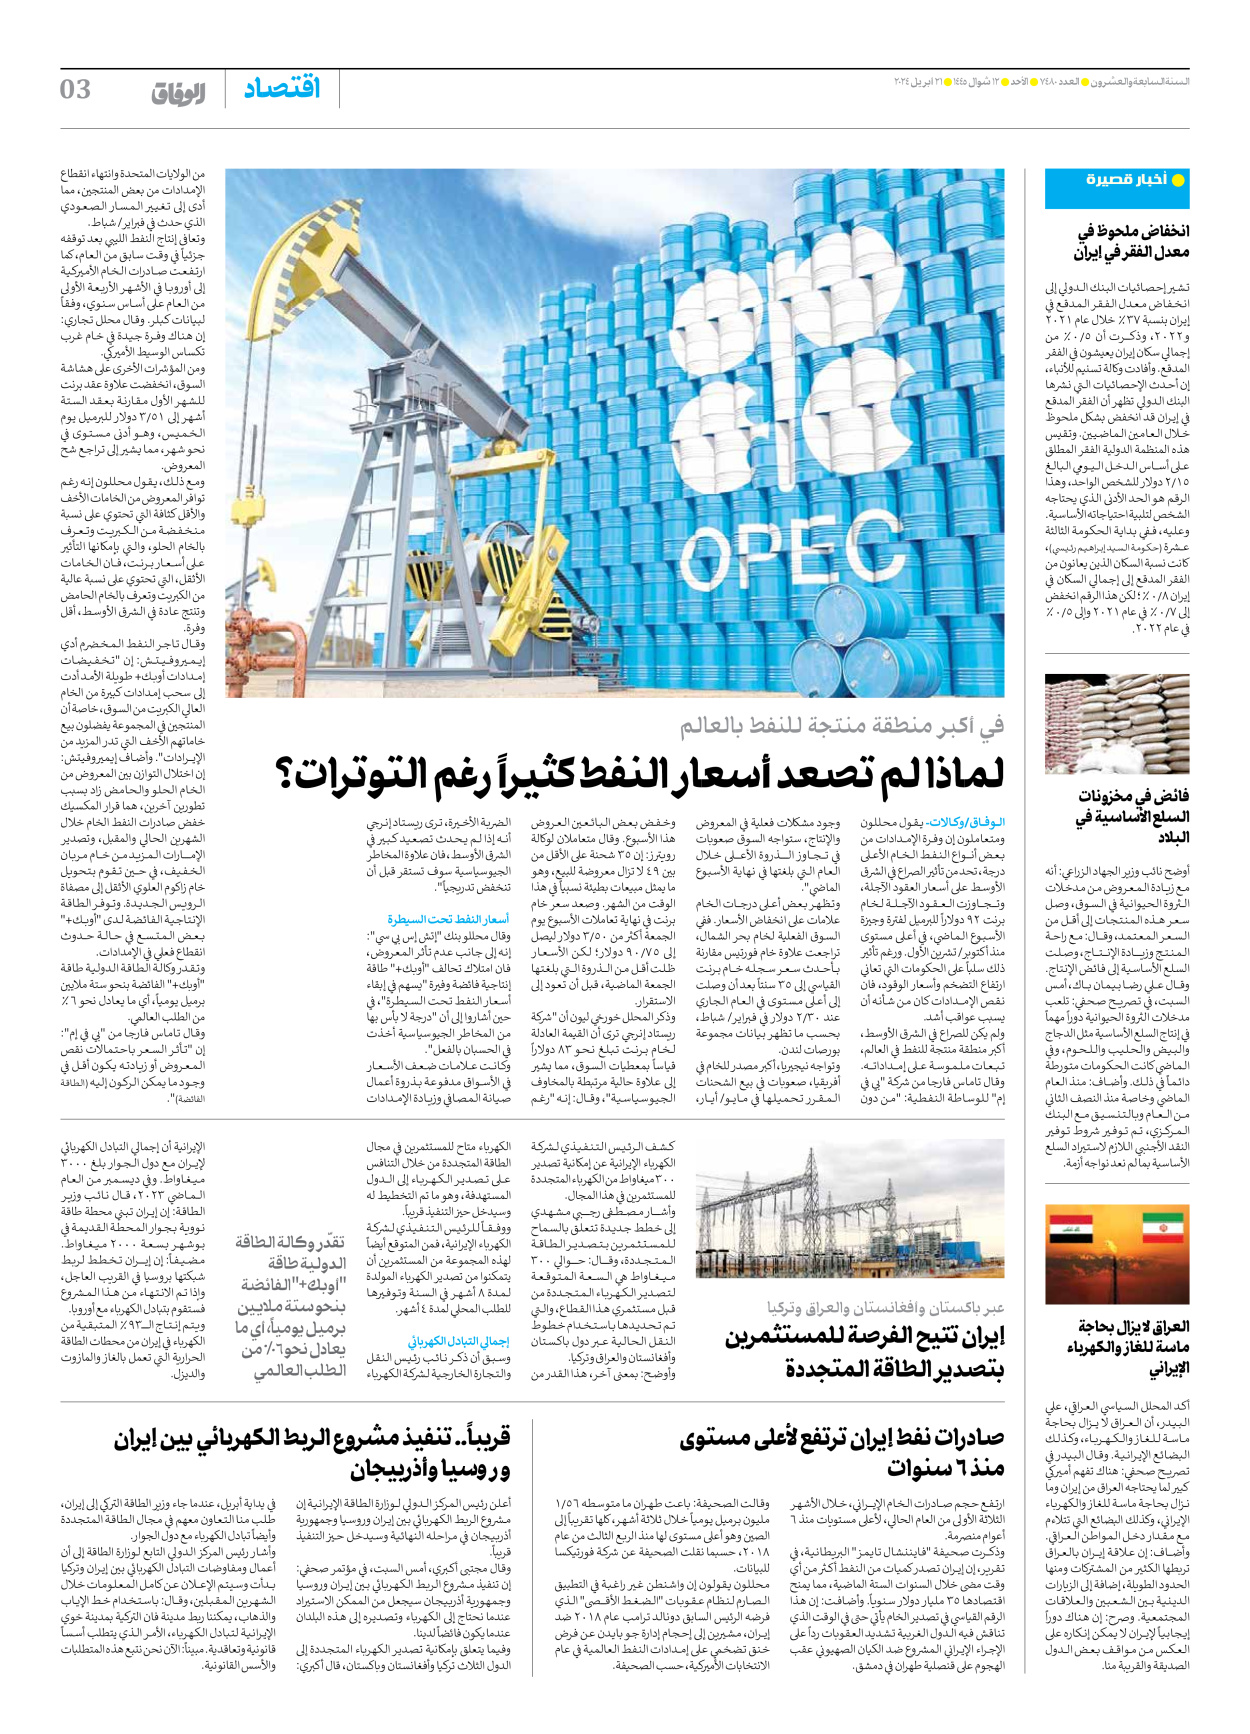 صحیفة ایران الدولیة الوفاق - العدد سبعة آلاف وأربعمائة وثمانون - ٢١ أبريل ٢٠٢٤ - الصفحة ۳